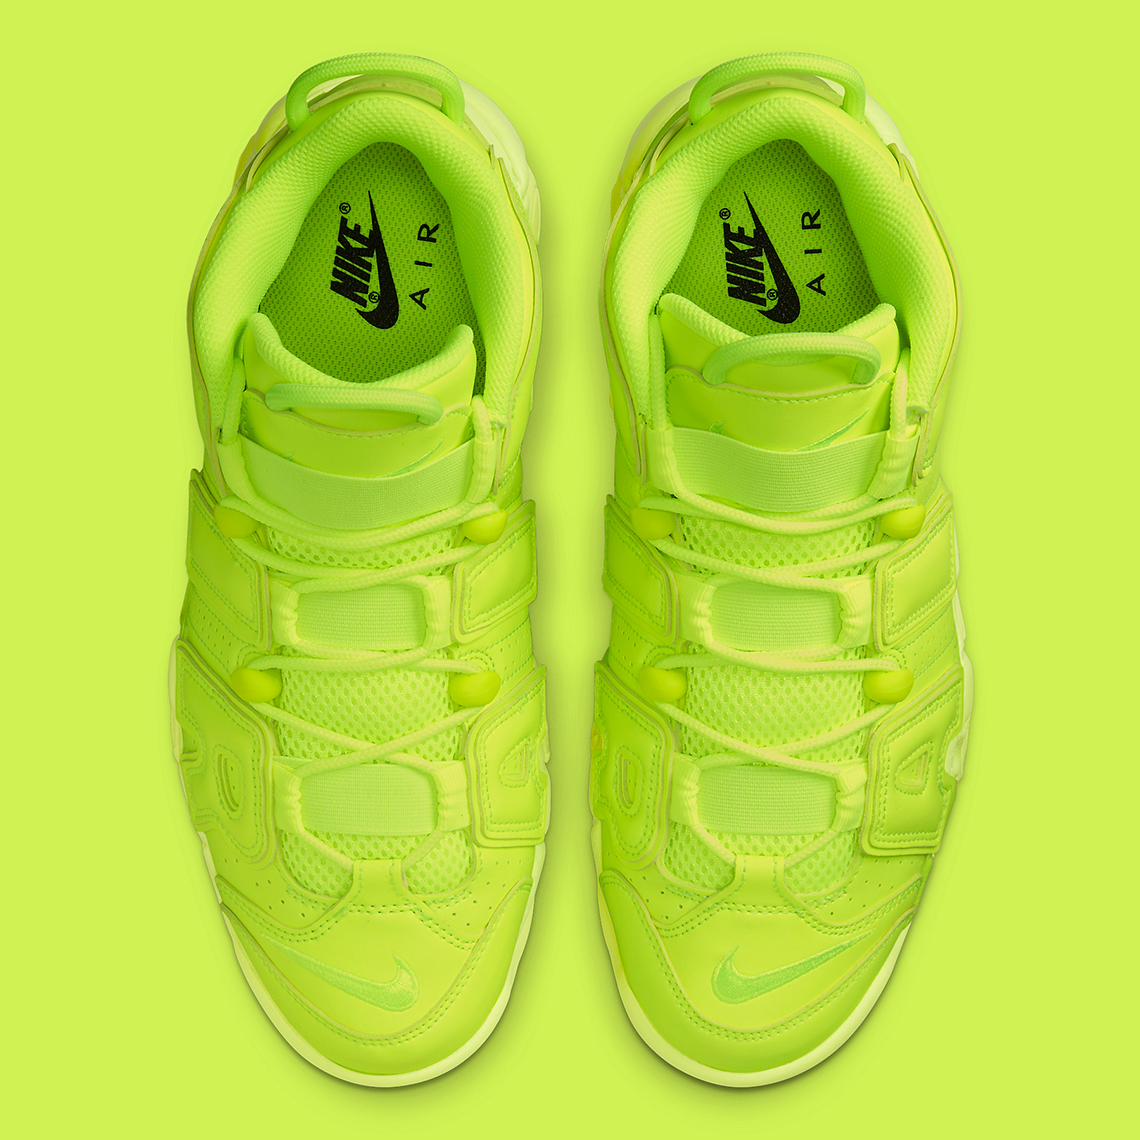 Nike Air More lime green uptempos Uptempo Volt DX1790-700 | SneakerNews.com